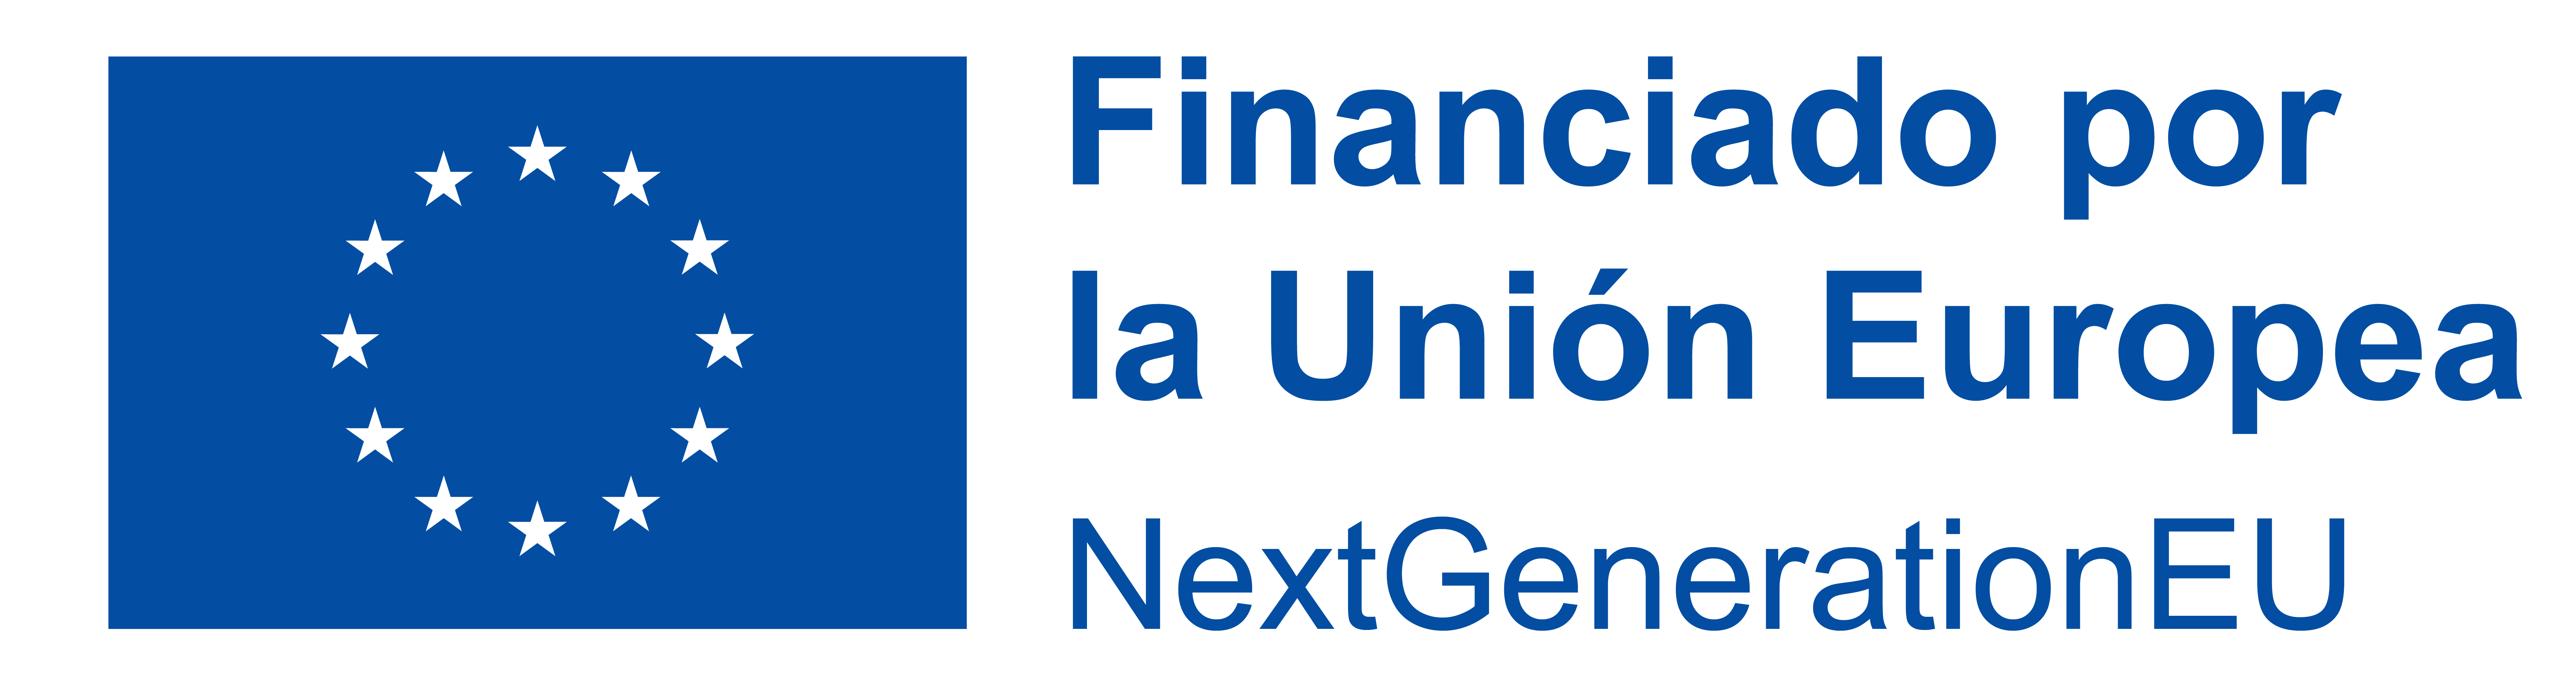 Logo de financiado por la unión europea